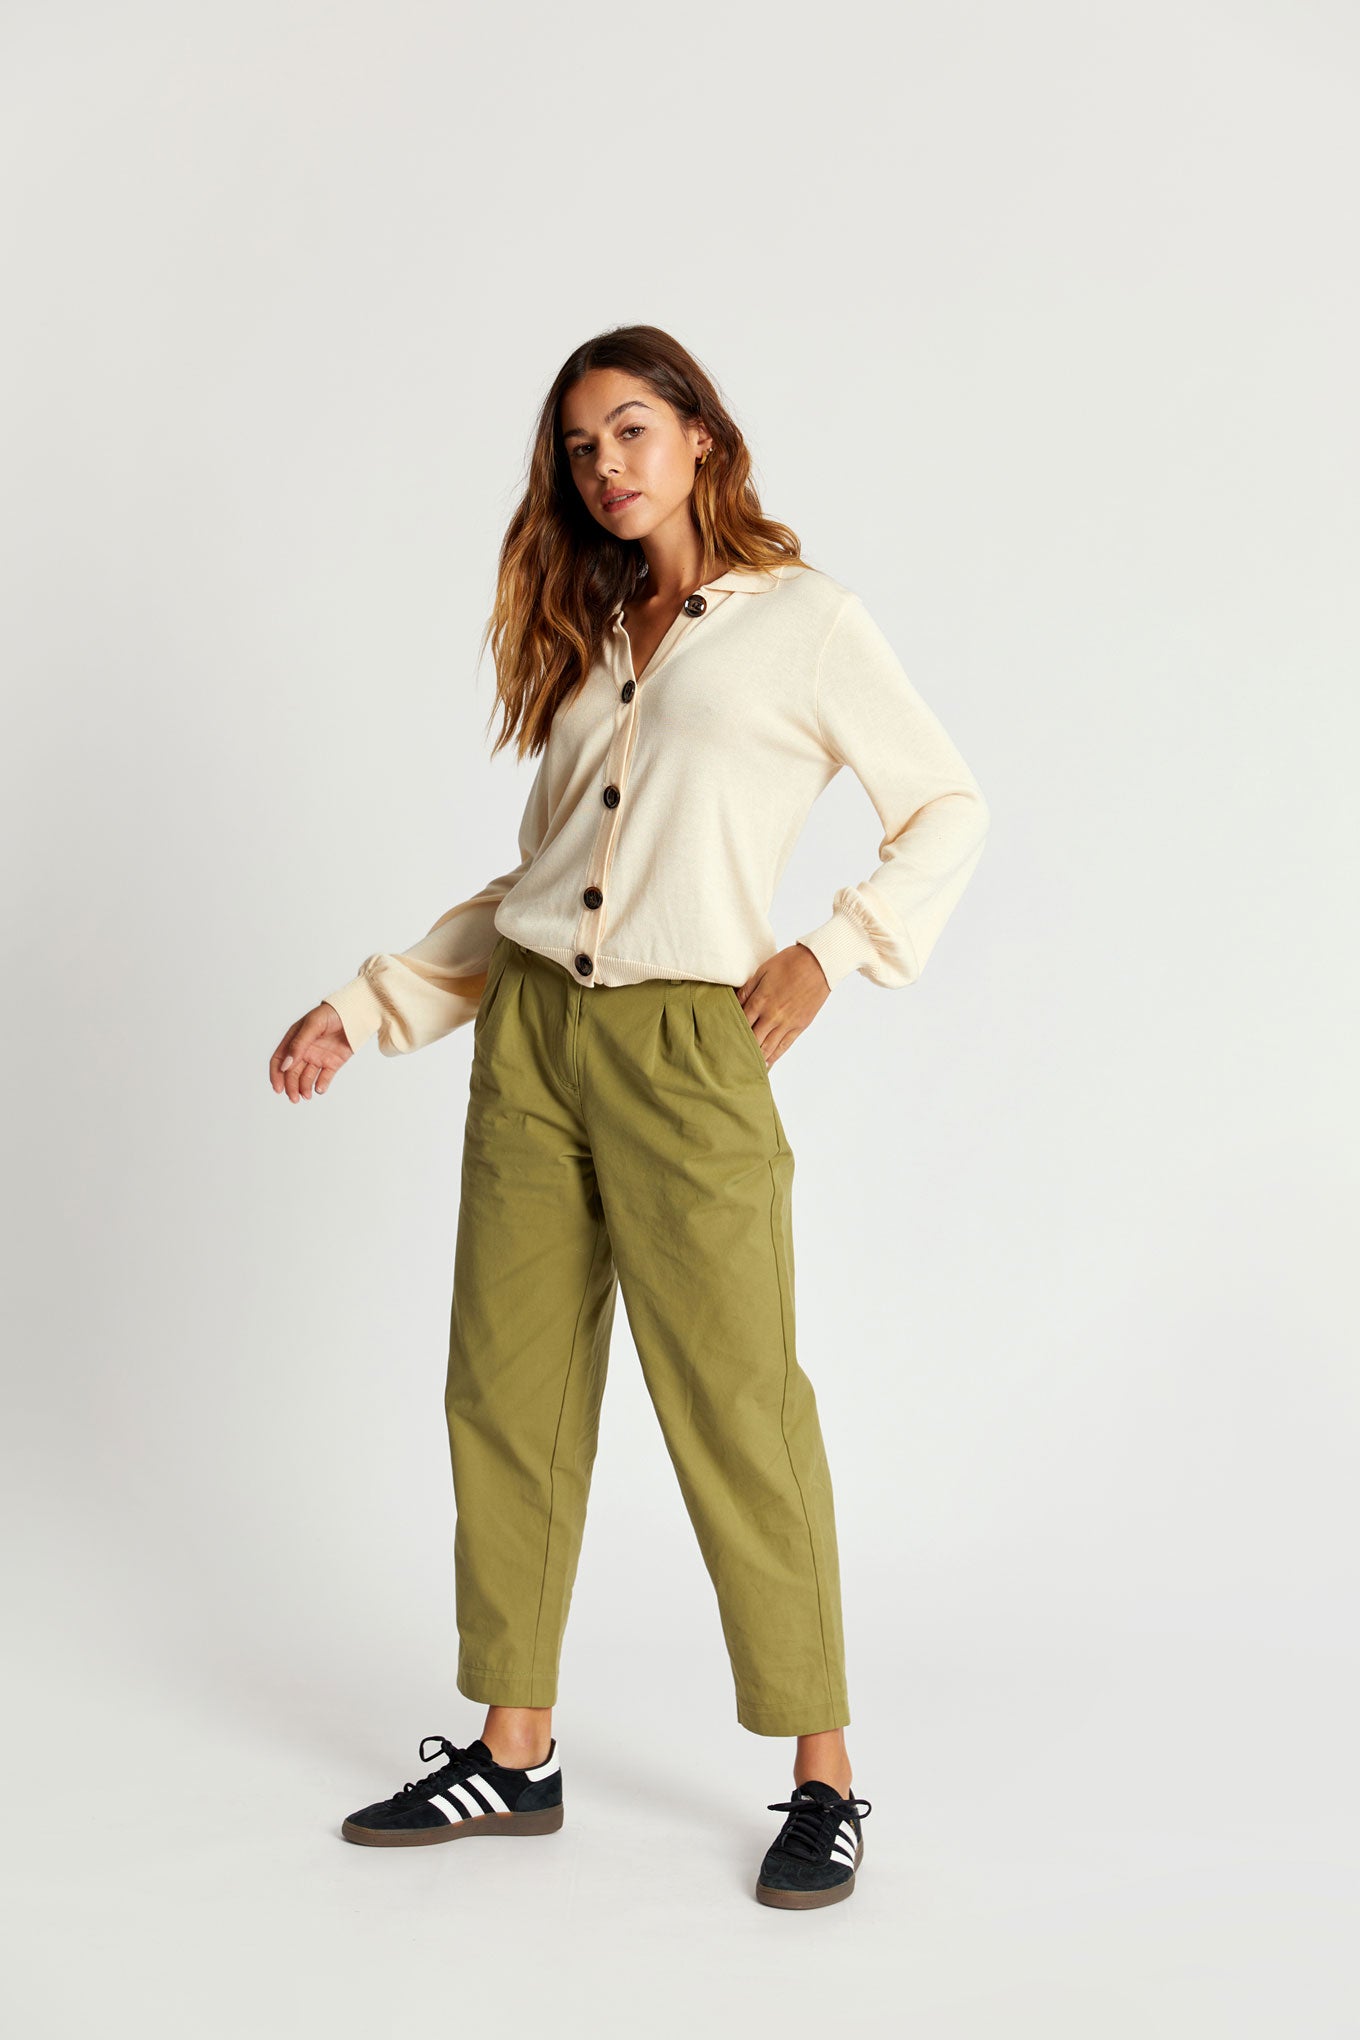 OLIA Organic Cotton Trouser - Khaki Green, SIZE 4 / UK 14 / EUR 42